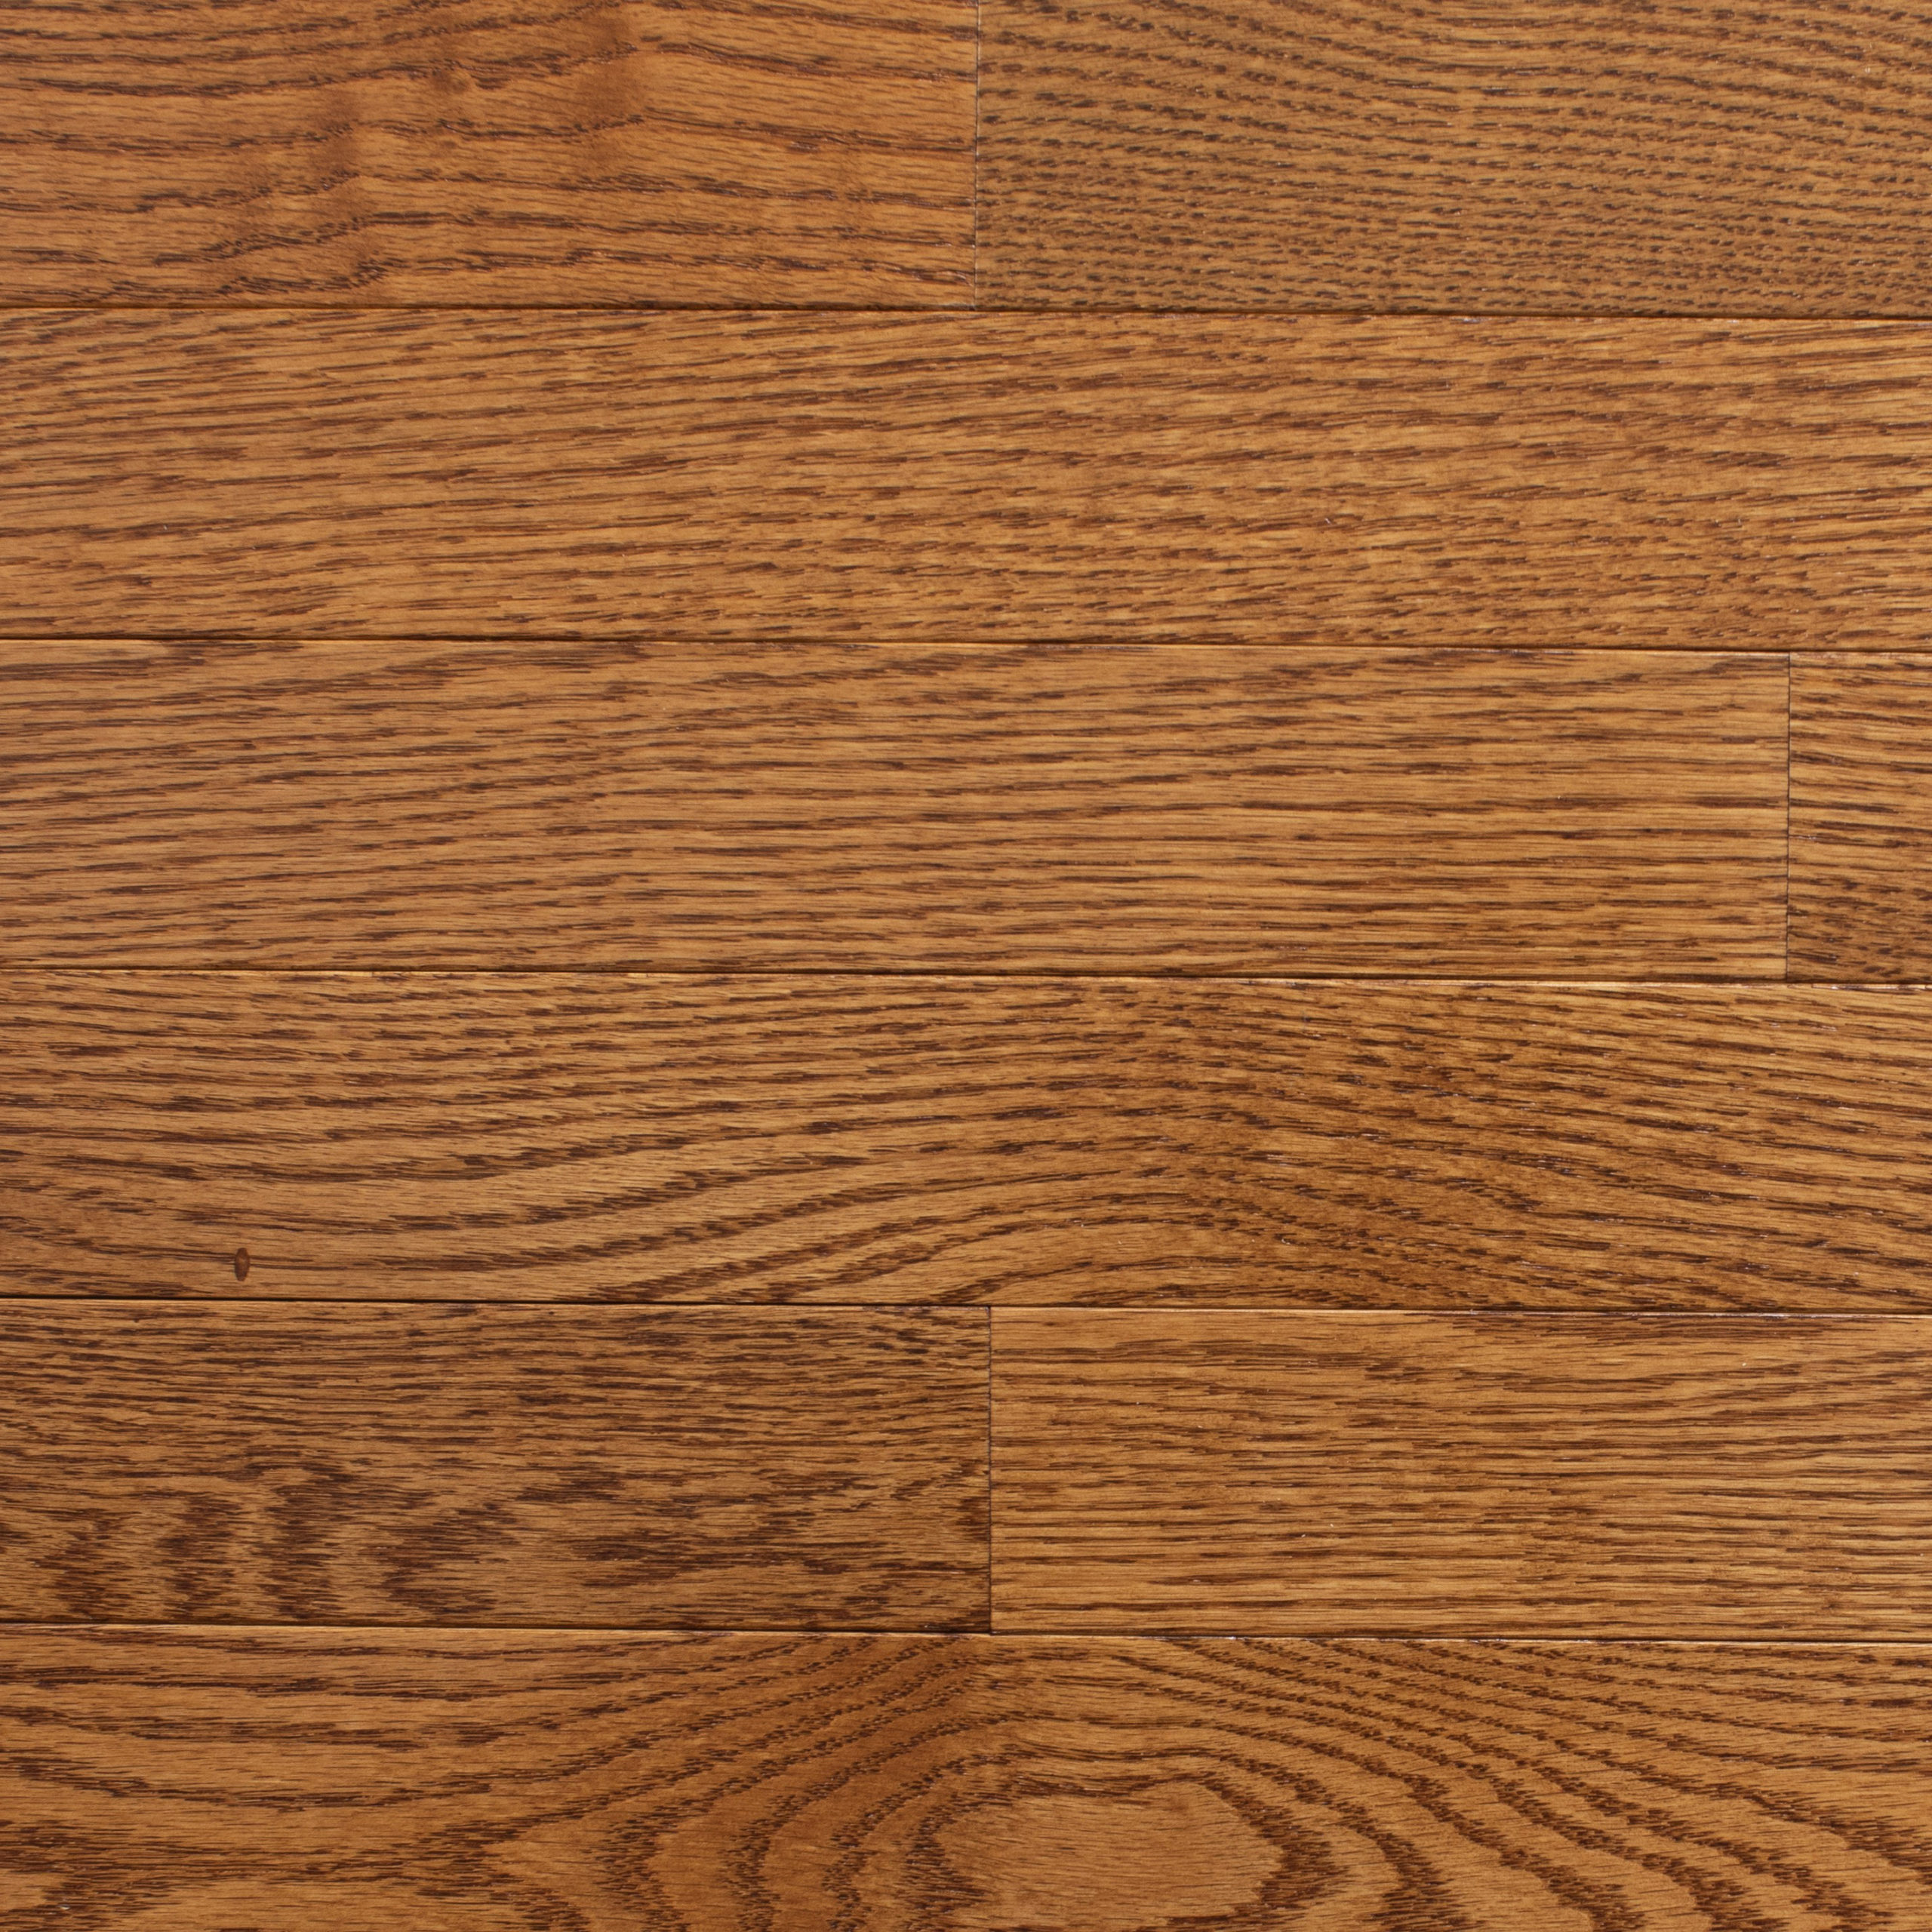 Oak Saddle 3 Great Lakes Flooring, Saddle Hardwood Floors